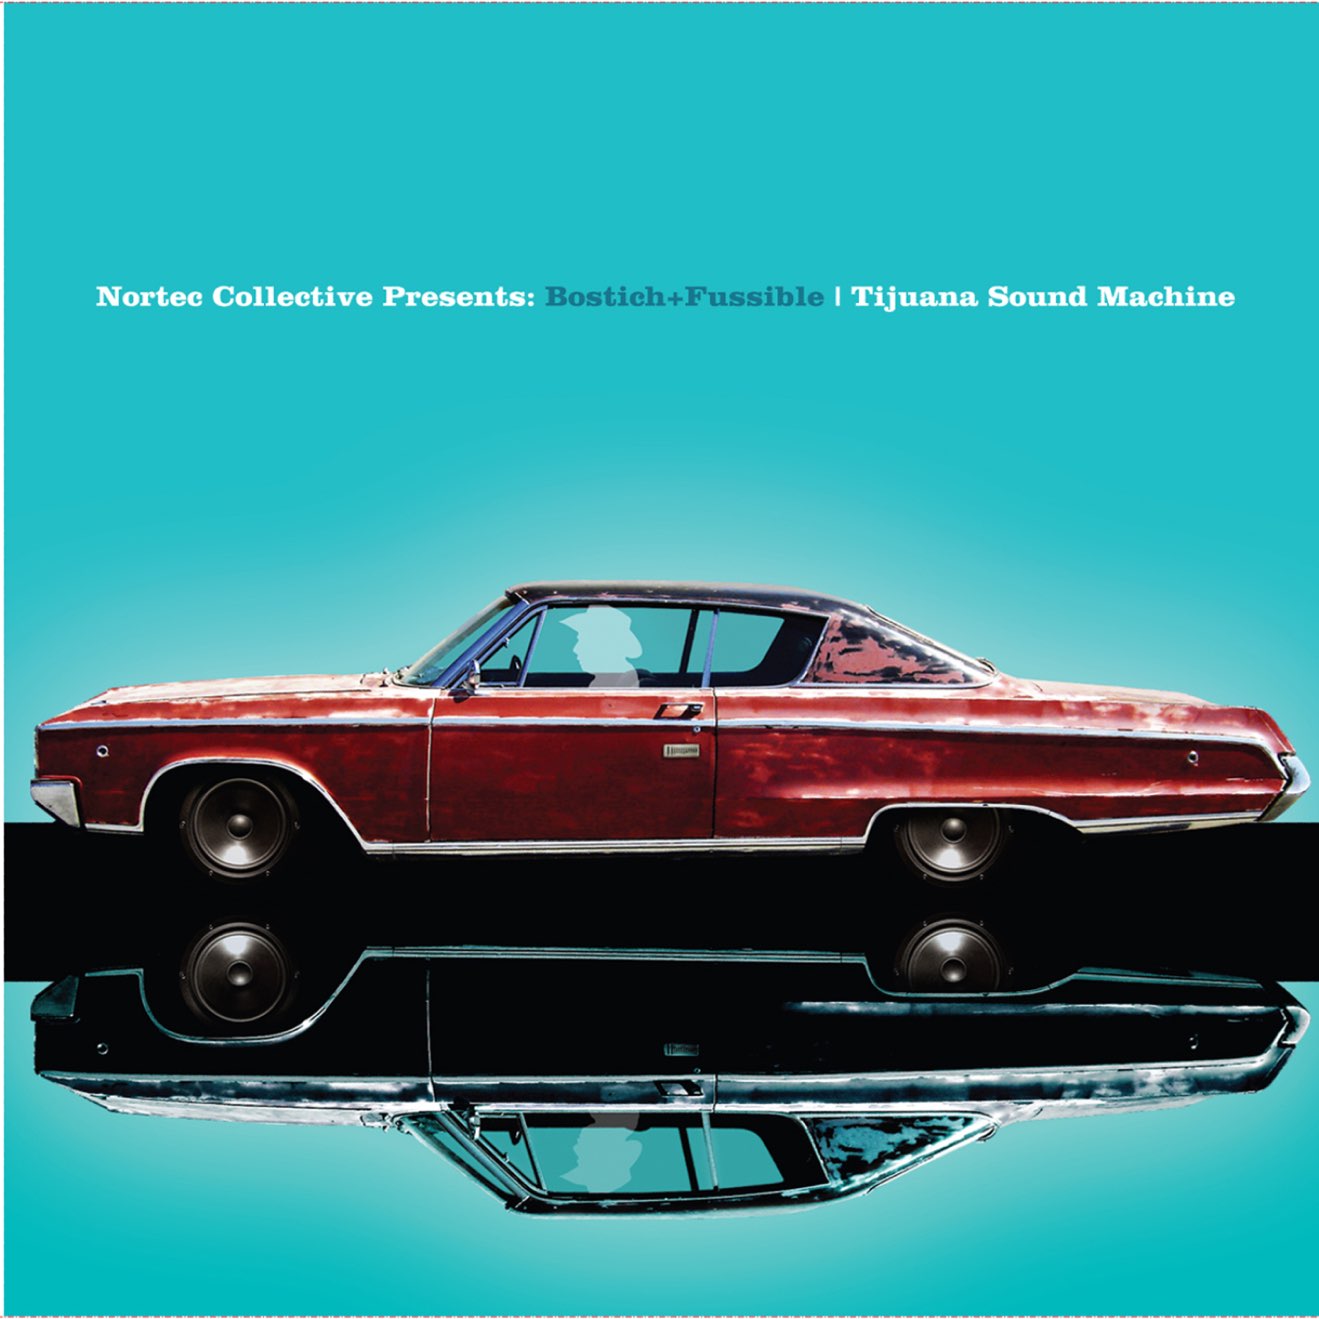 Nortec: Bostich + Fussible – Tijuana Sound Machine (Nortec Collective Presents Bostich & Fussible) (2008) [iTunes Match M4A]